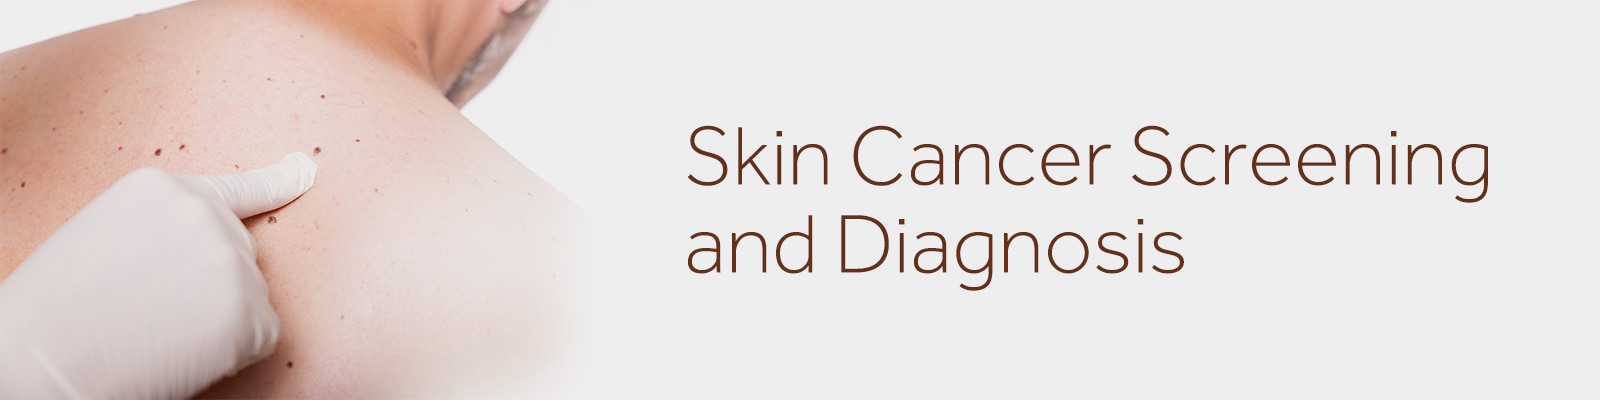 Equipos y suministros para la detección y el diagnóstico del cáncer de piel